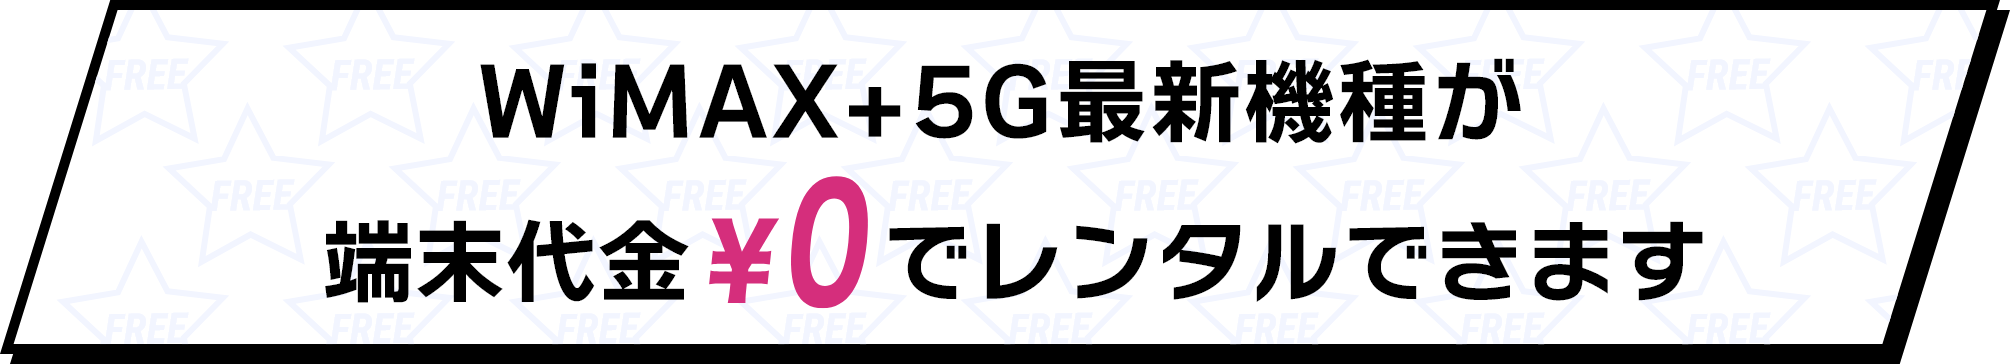 WiMAX+5G最新機種が端末代金\0でレンタルできます